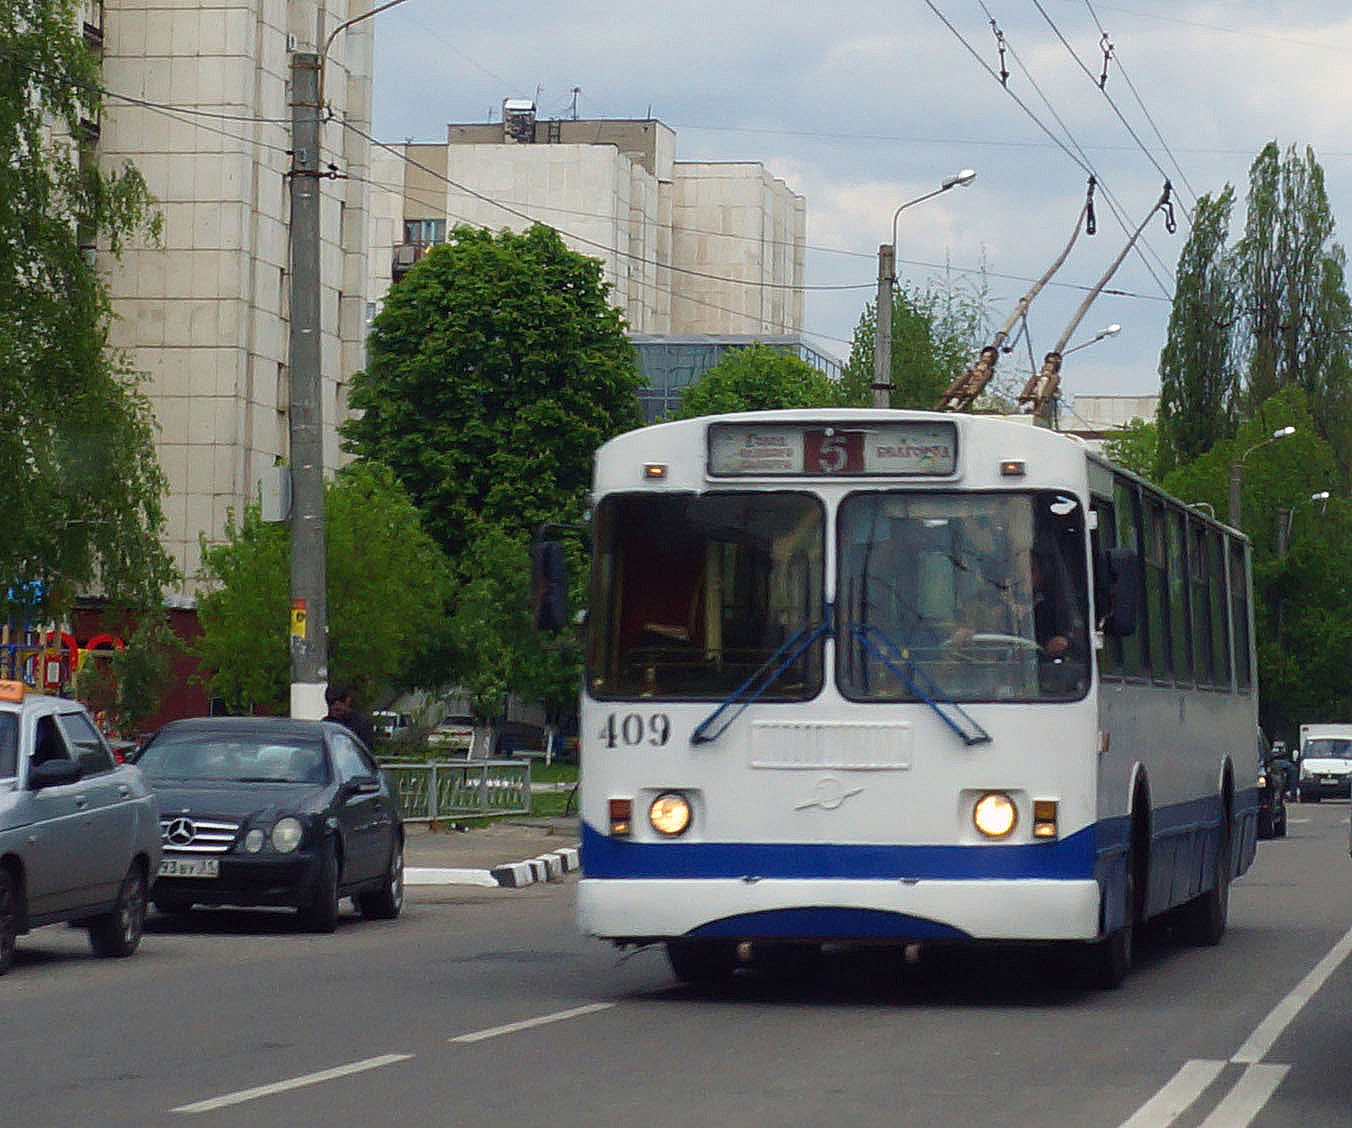 Белгородский Троллейбус № 409, ул. Железнякова, 2016 год, по пути в депо на служебном участке КС.